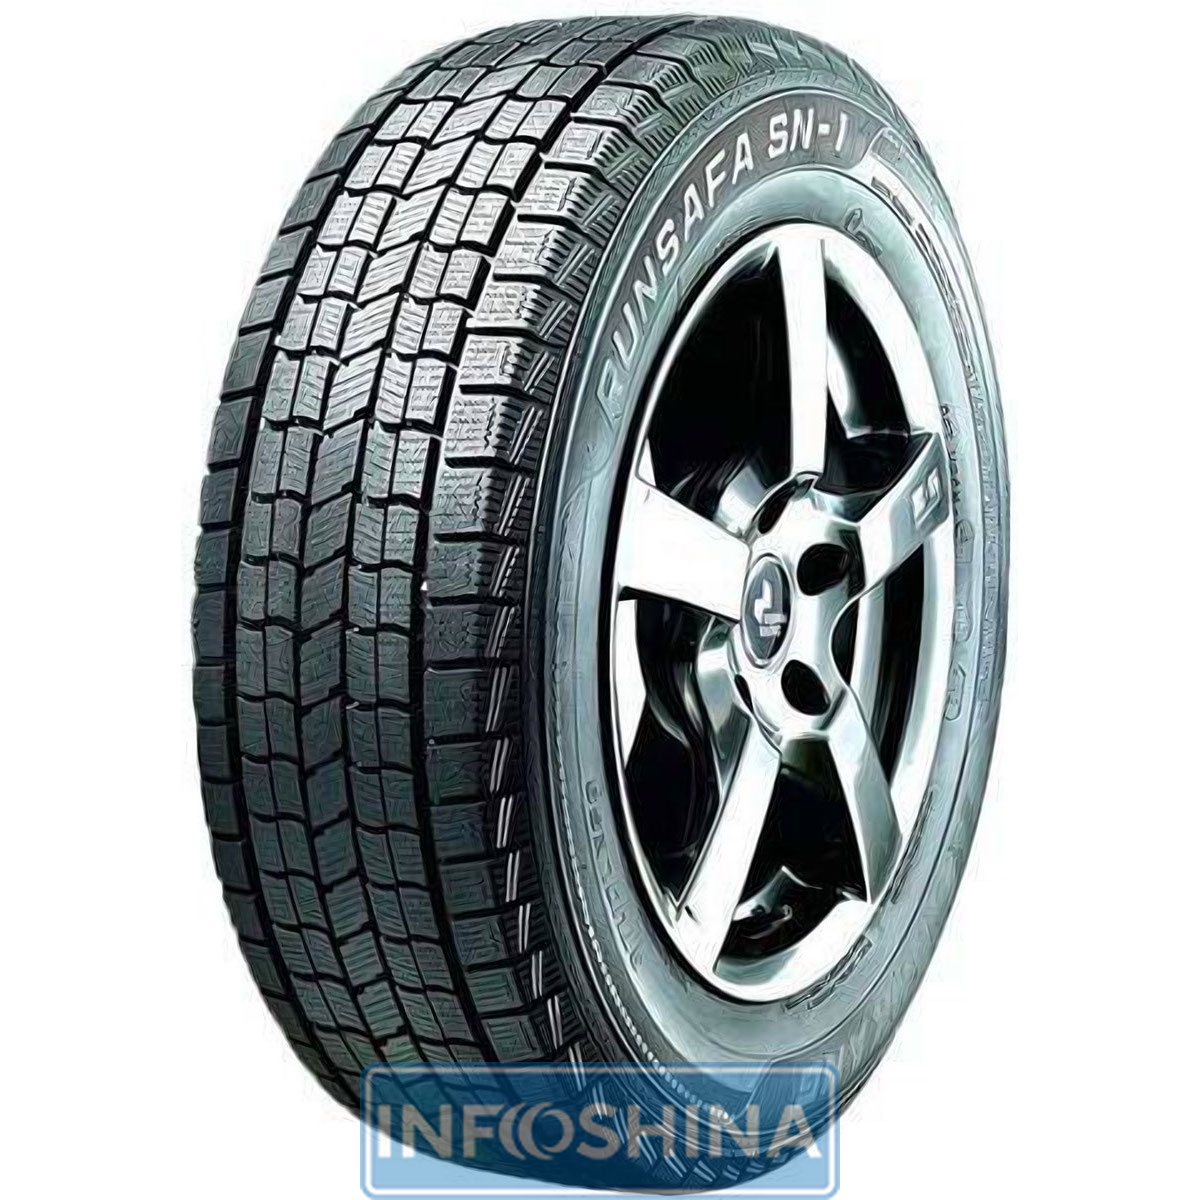 Купить шины Nankang Runsafa SN-1 225/45 R18 95R